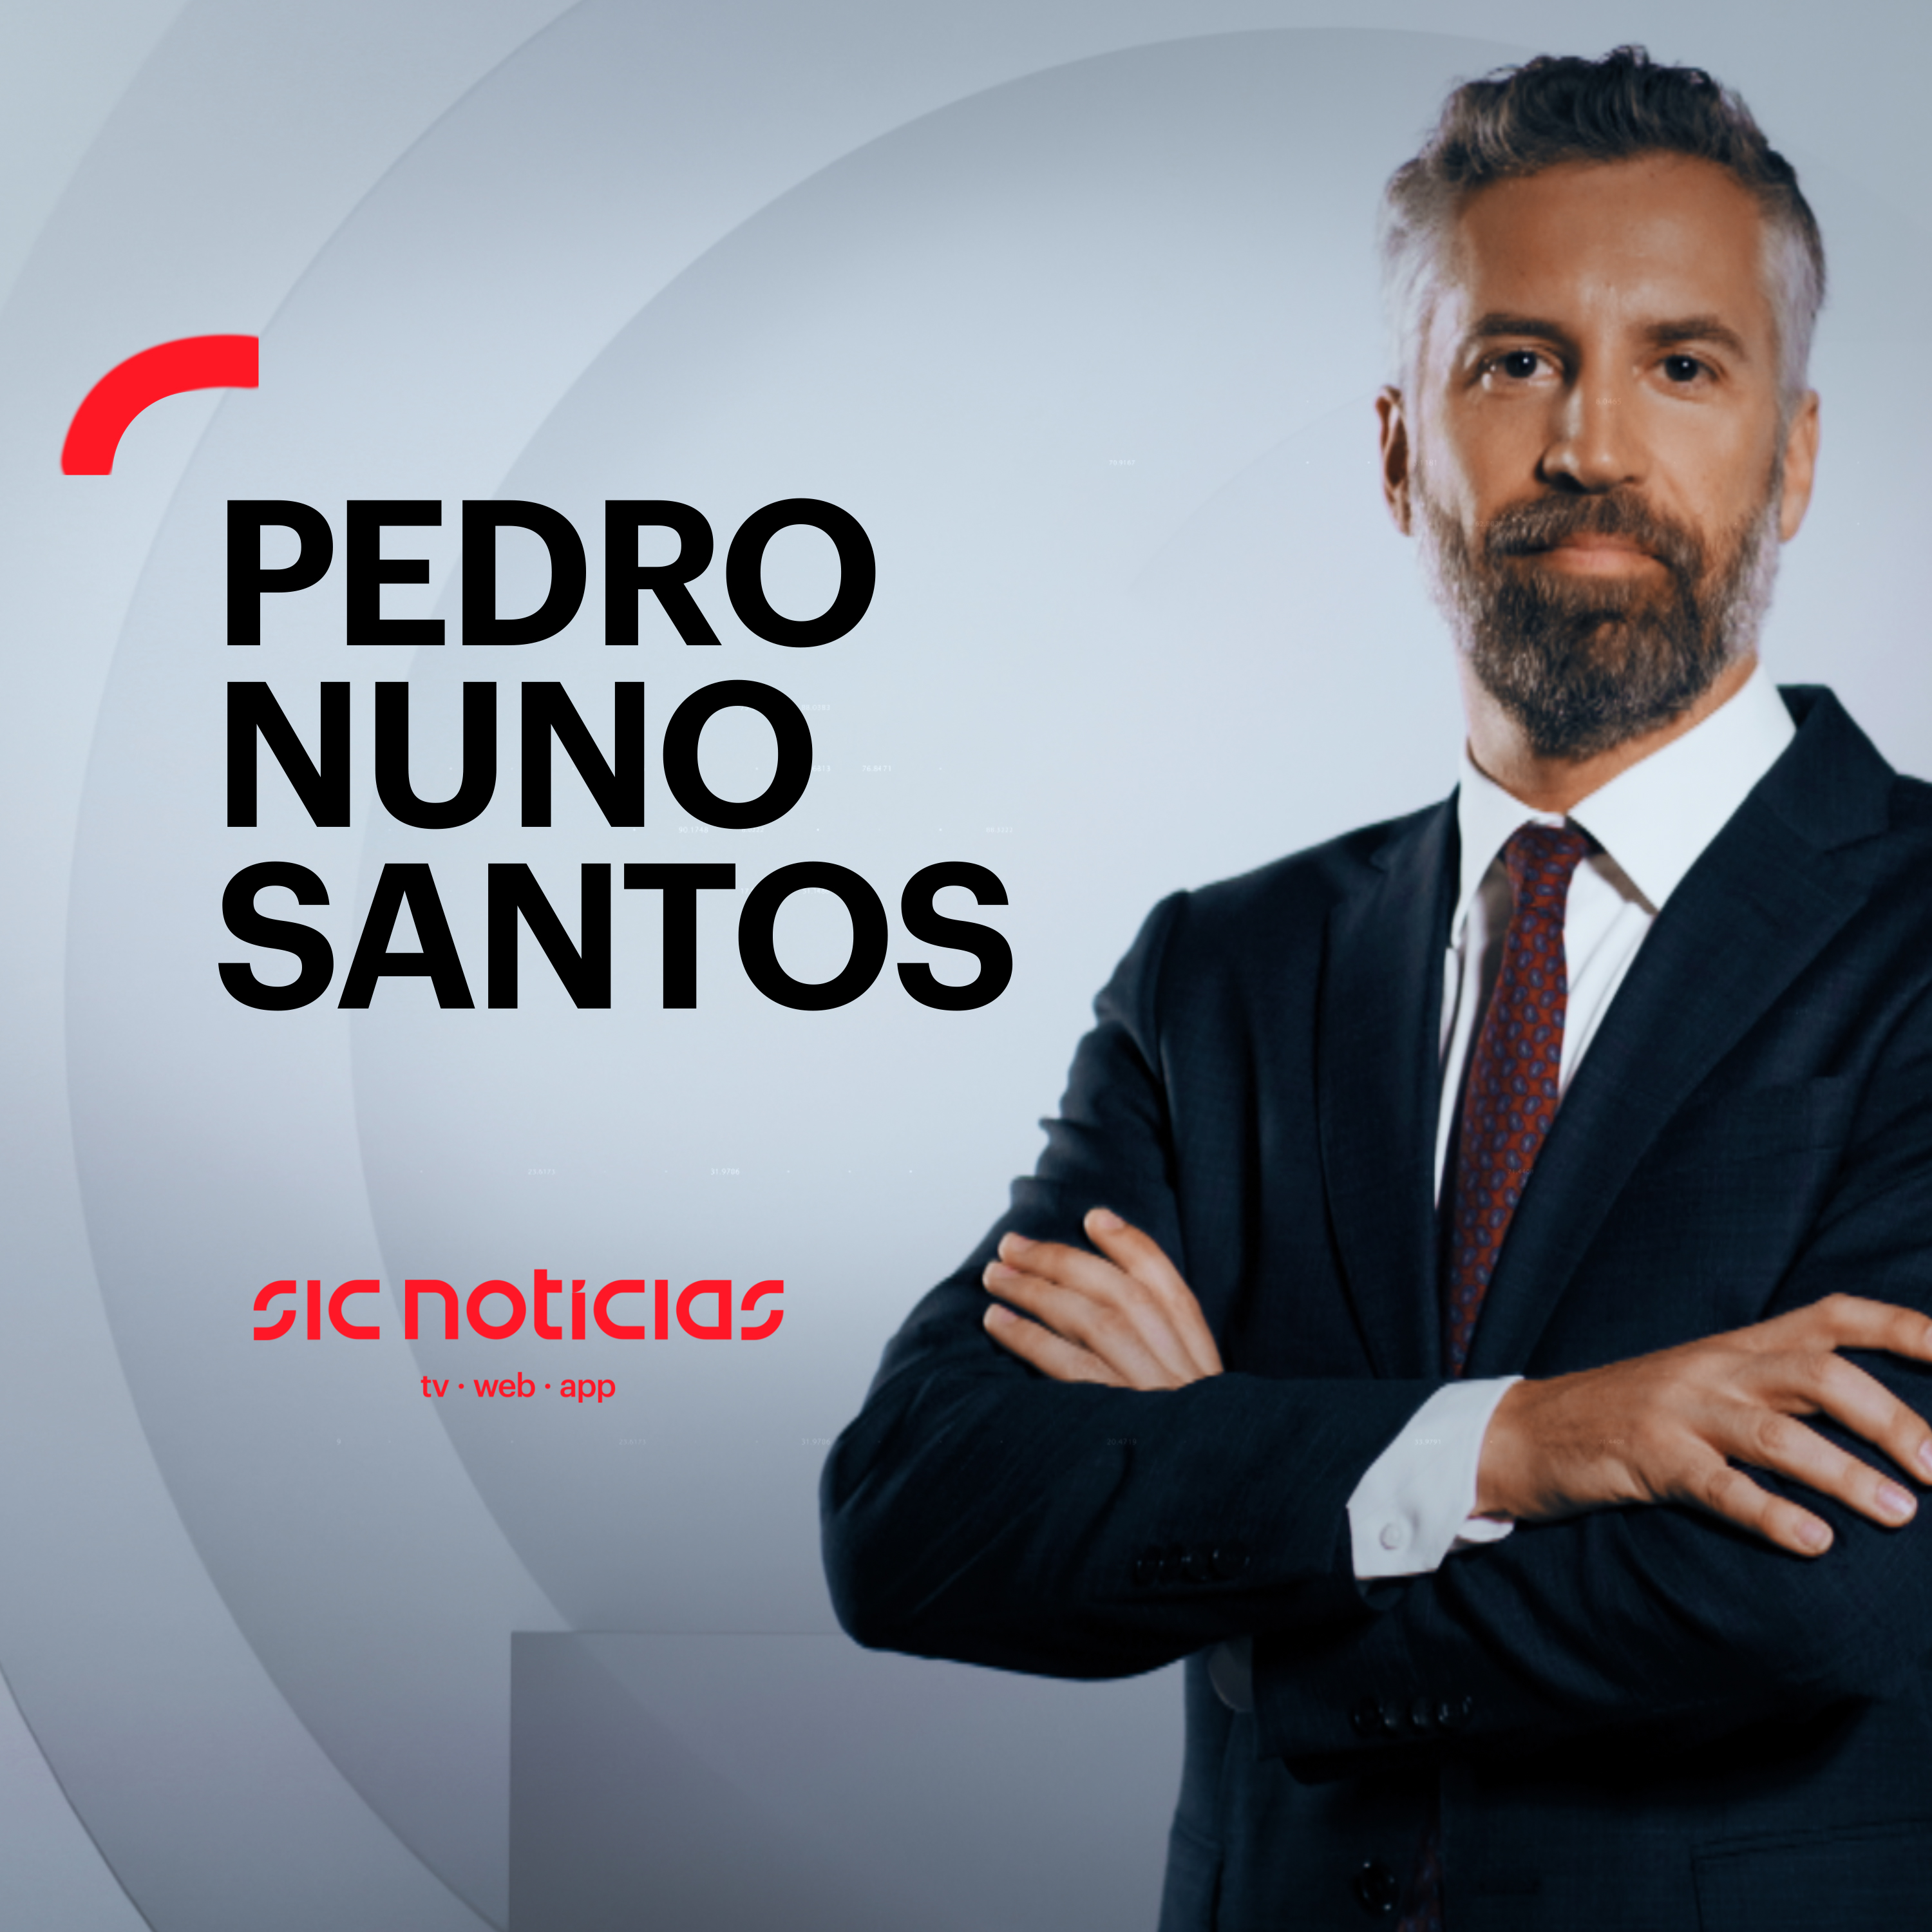 Pedro Nuno Santos